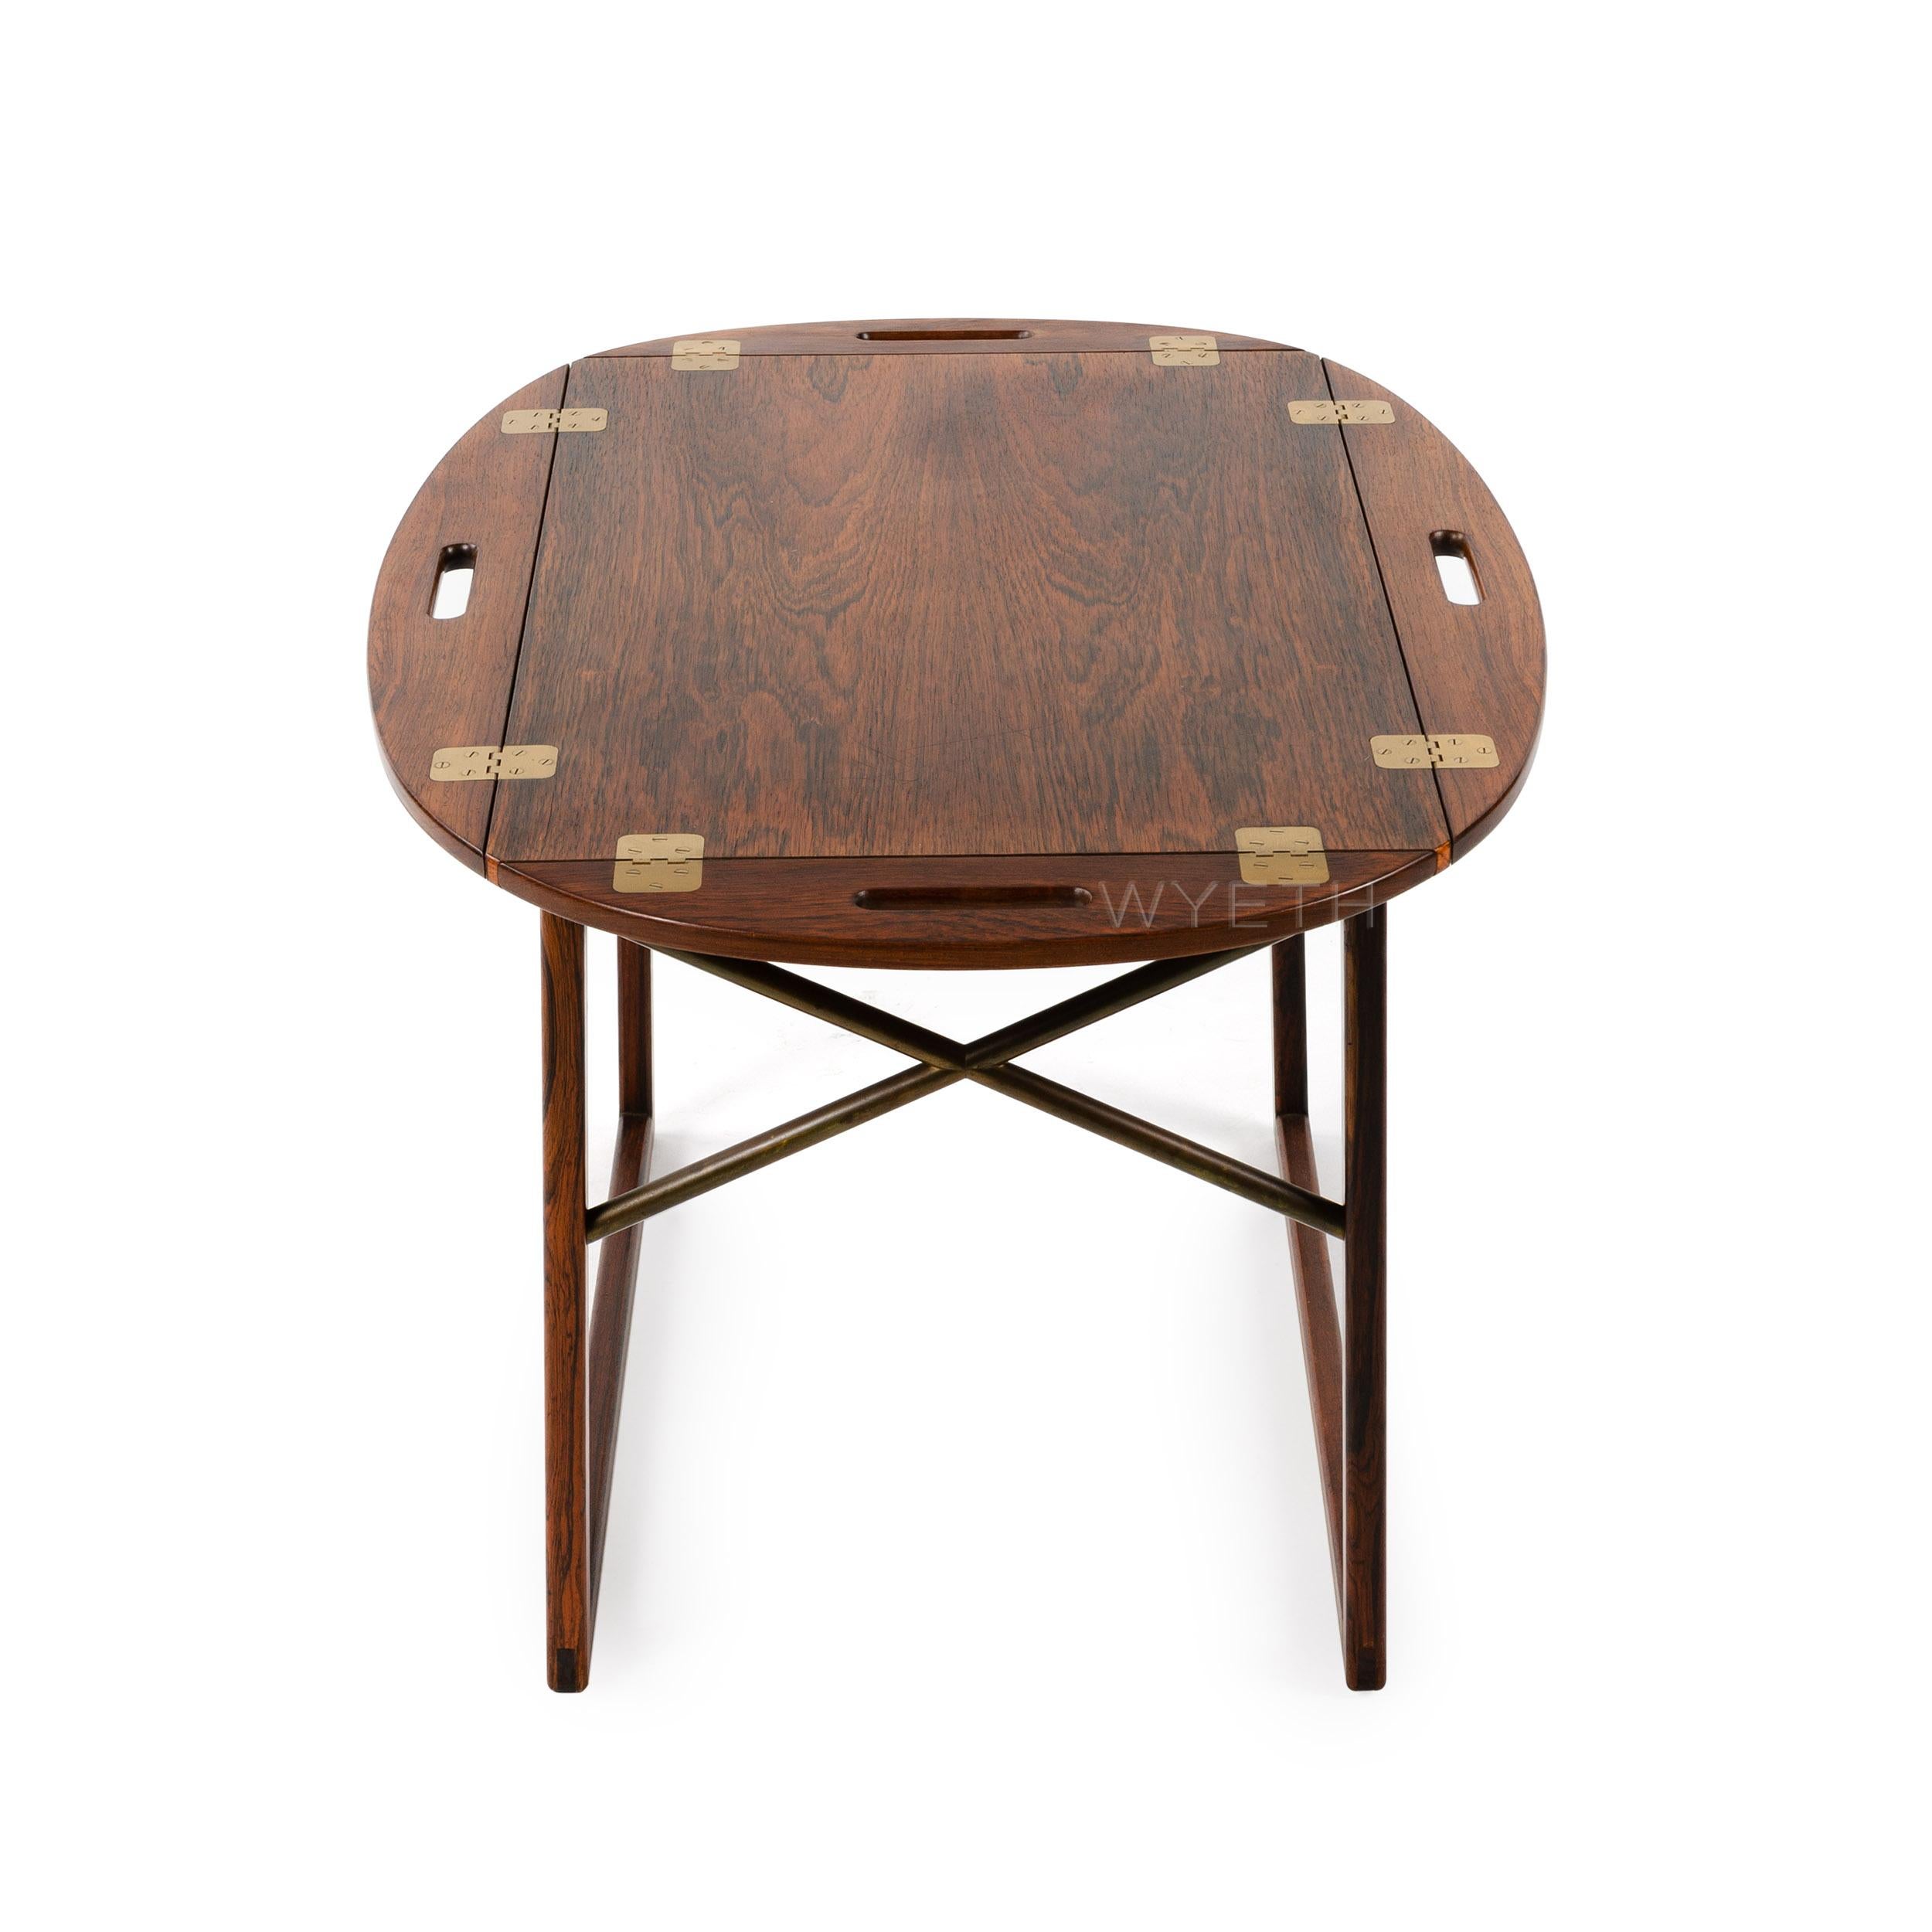 Une table à plateau finement travaillée, en bois de rose, avec un plateau amovible. Les bords articulés en laiton se relèvent pour se transformer en poignées.